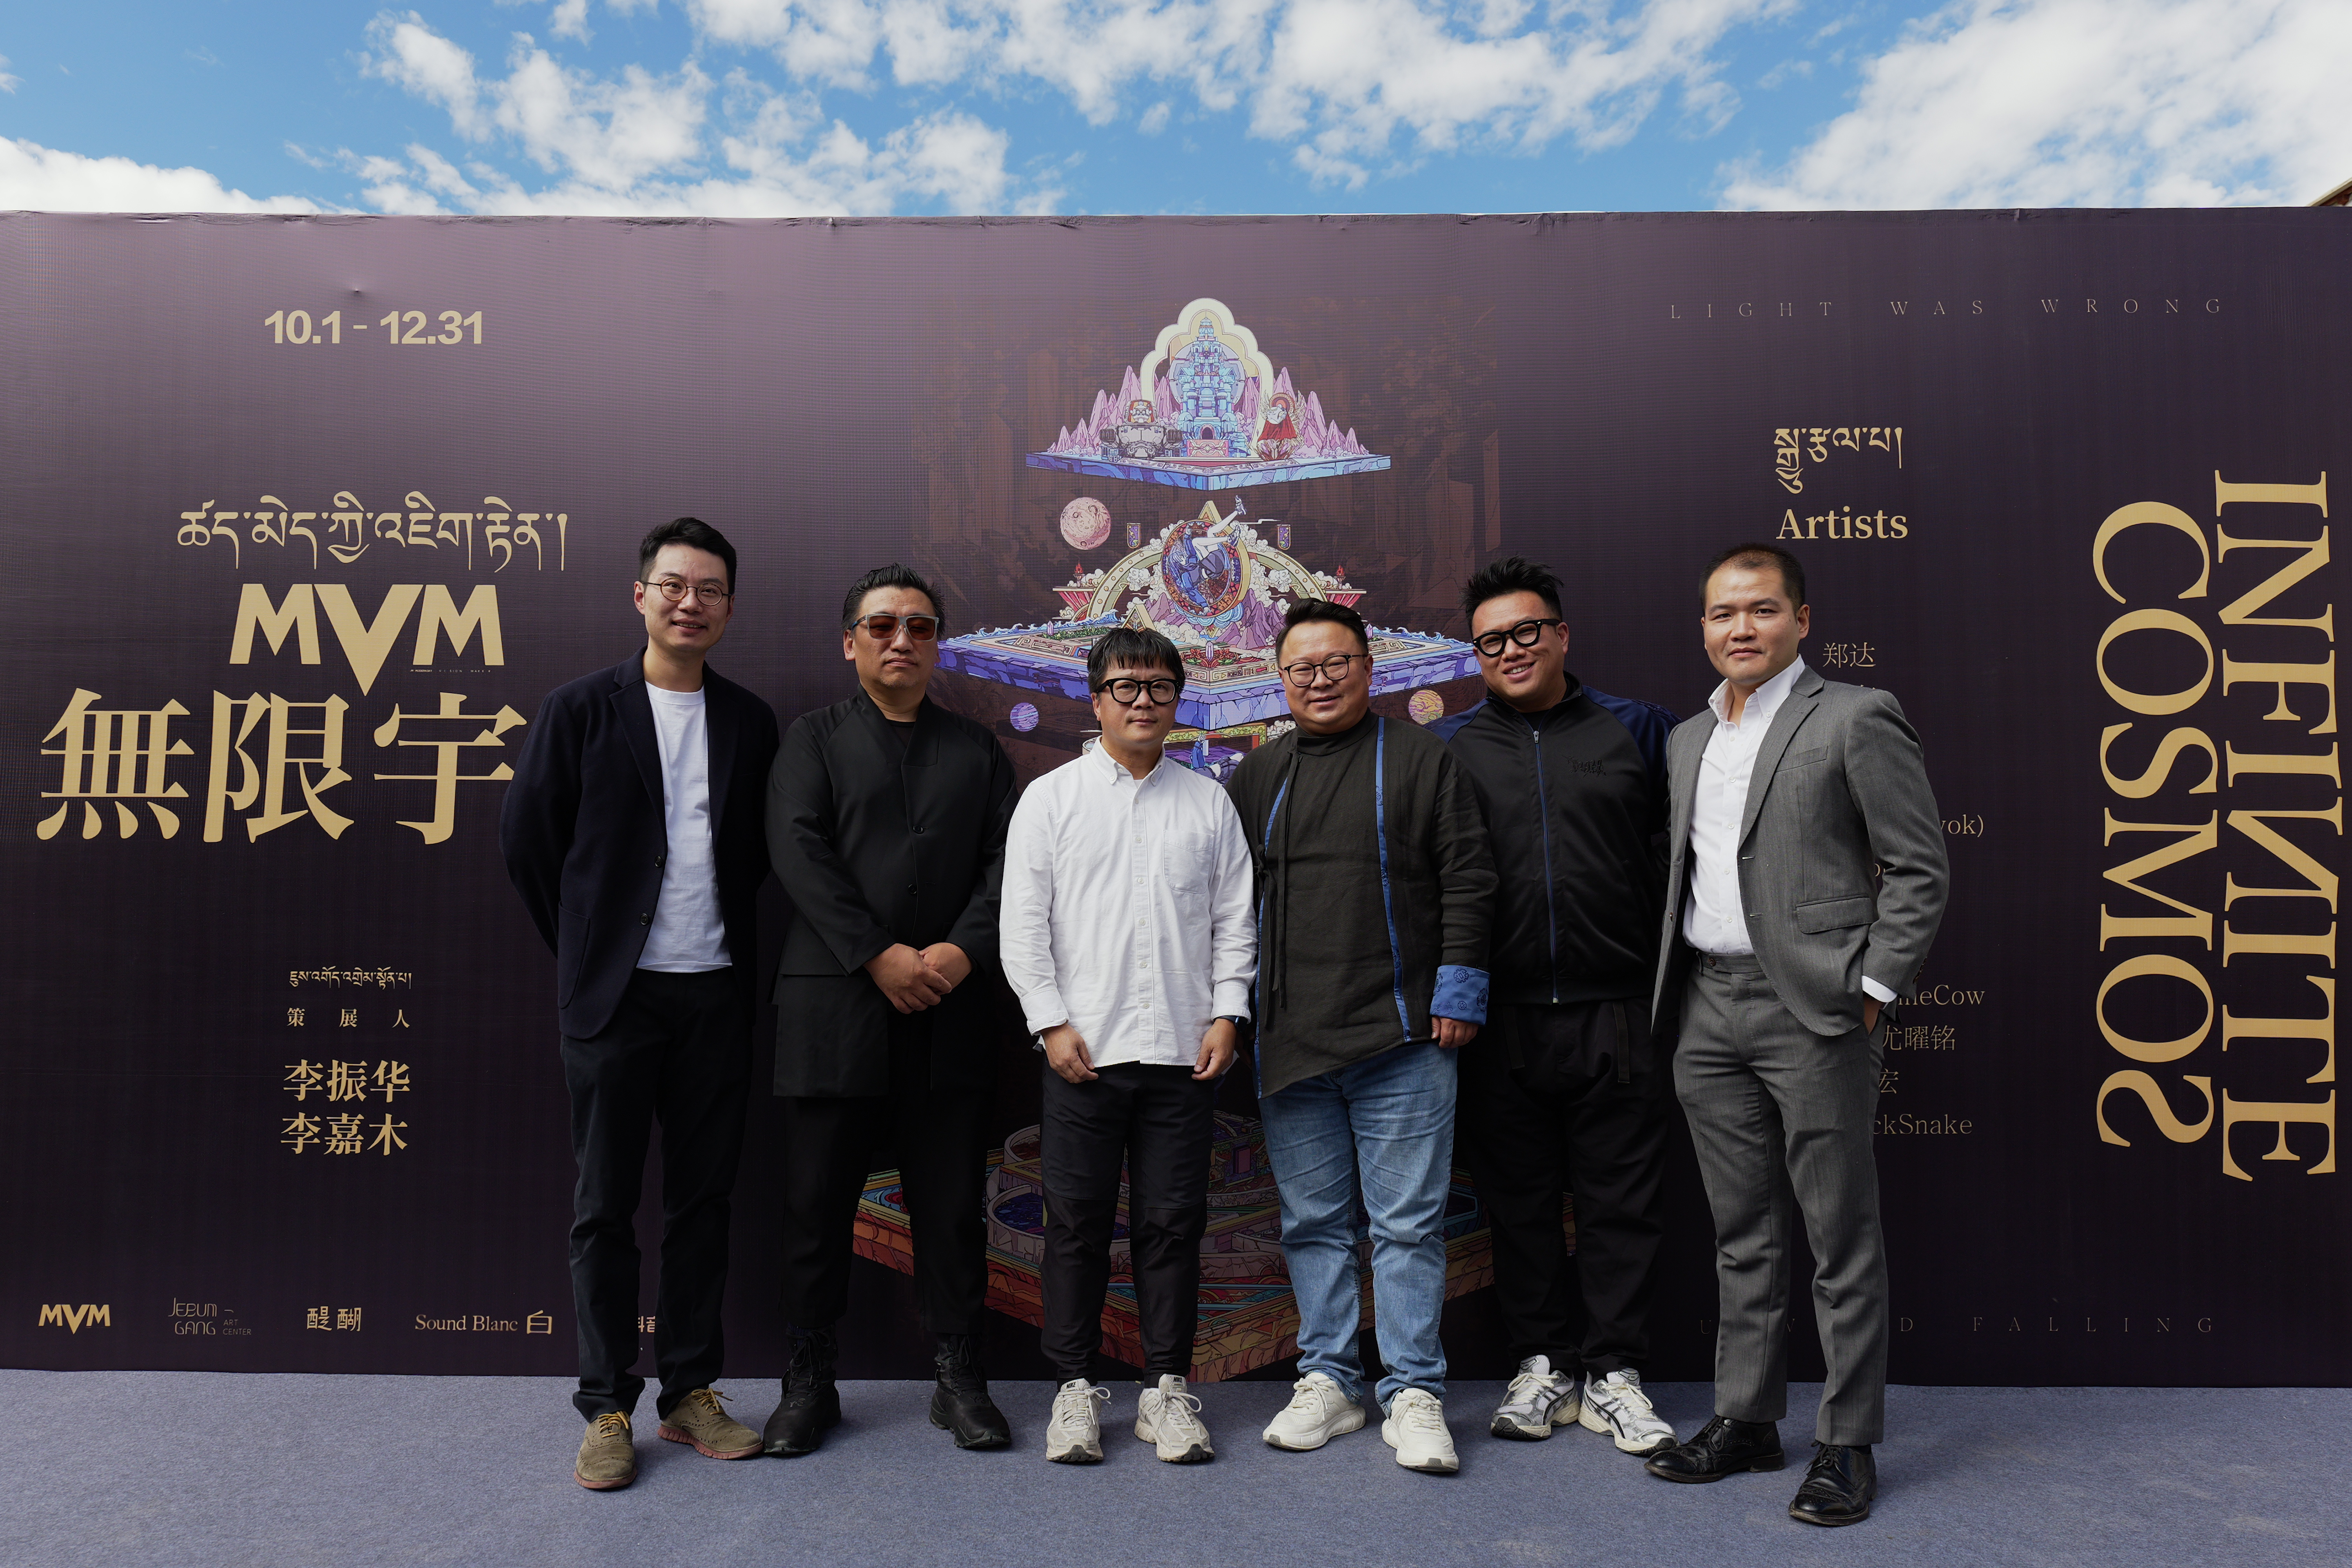 西藏首个数字艺术大展揭幕汉藏新媒体艺术家共话“无限宇宙”